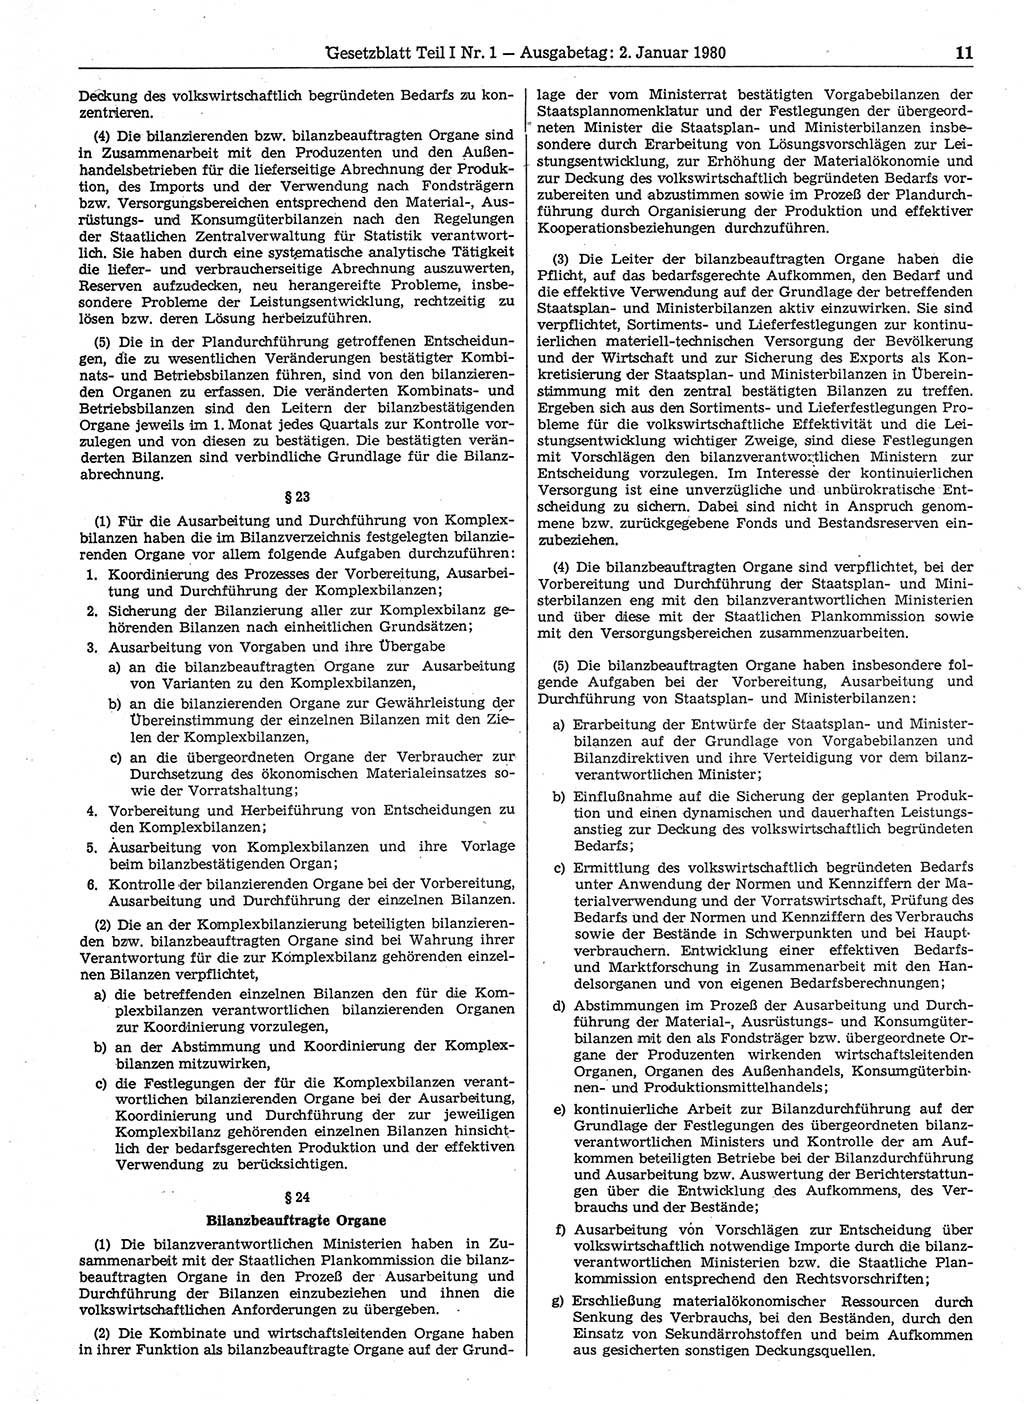 Gesetzblatt (GBl.) der Deutschen Demokratischen Republik (DDR) Teil Ⅰ 1980, Seite 11 (GBl. DDR Ⅰ 1980, S. 11)